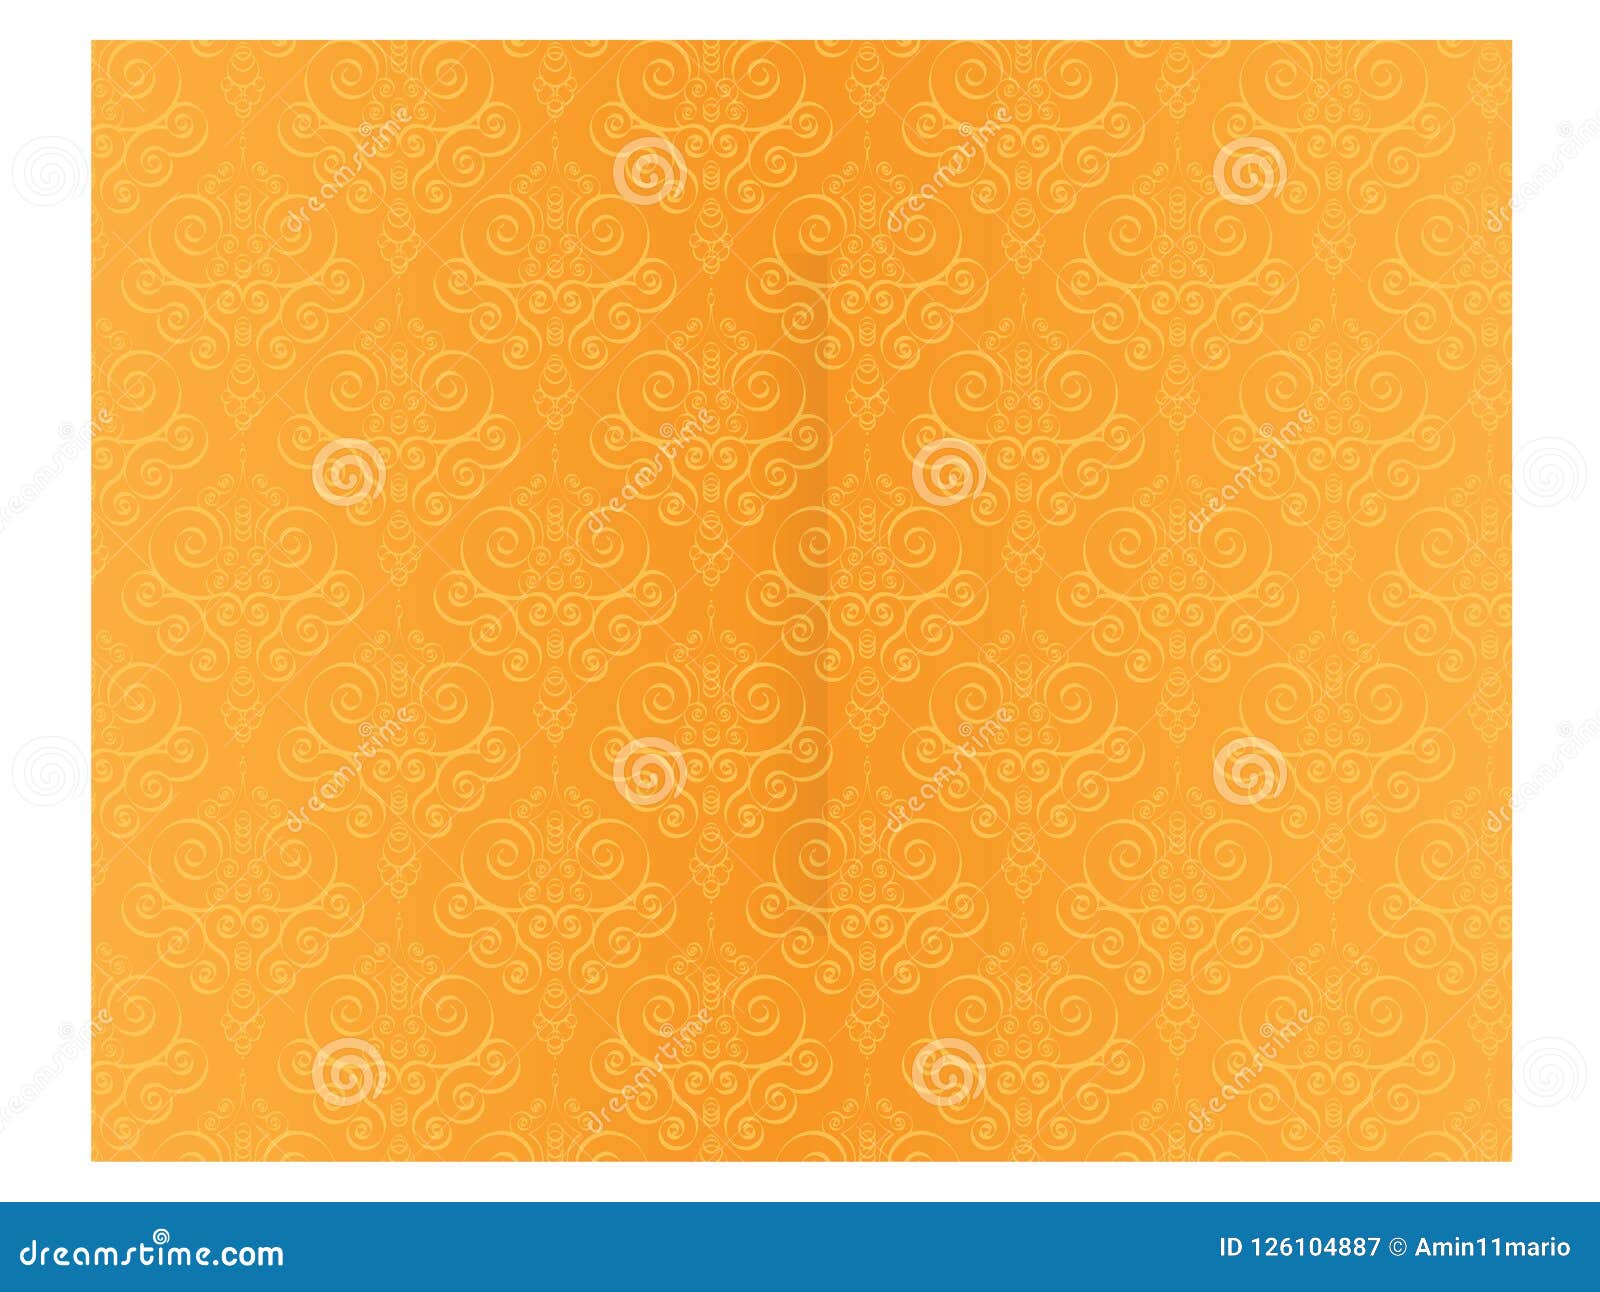 Với hình nền vector nền Batik cam, bạn sẽ bị cuốn hút ngay từ cái nhìn đầu tiên bởi sự sinh động và rực rỡ của màu cam đầy năng lượng này. Hình ảnh được thiết kế bằng vector, cho phép bạn có thể co giãn nó mà không làm mất chất lượng ảnh. Hãy tải ngay để trang trí máy tính của bạn trở nên độc đáo và sinh động hơn.